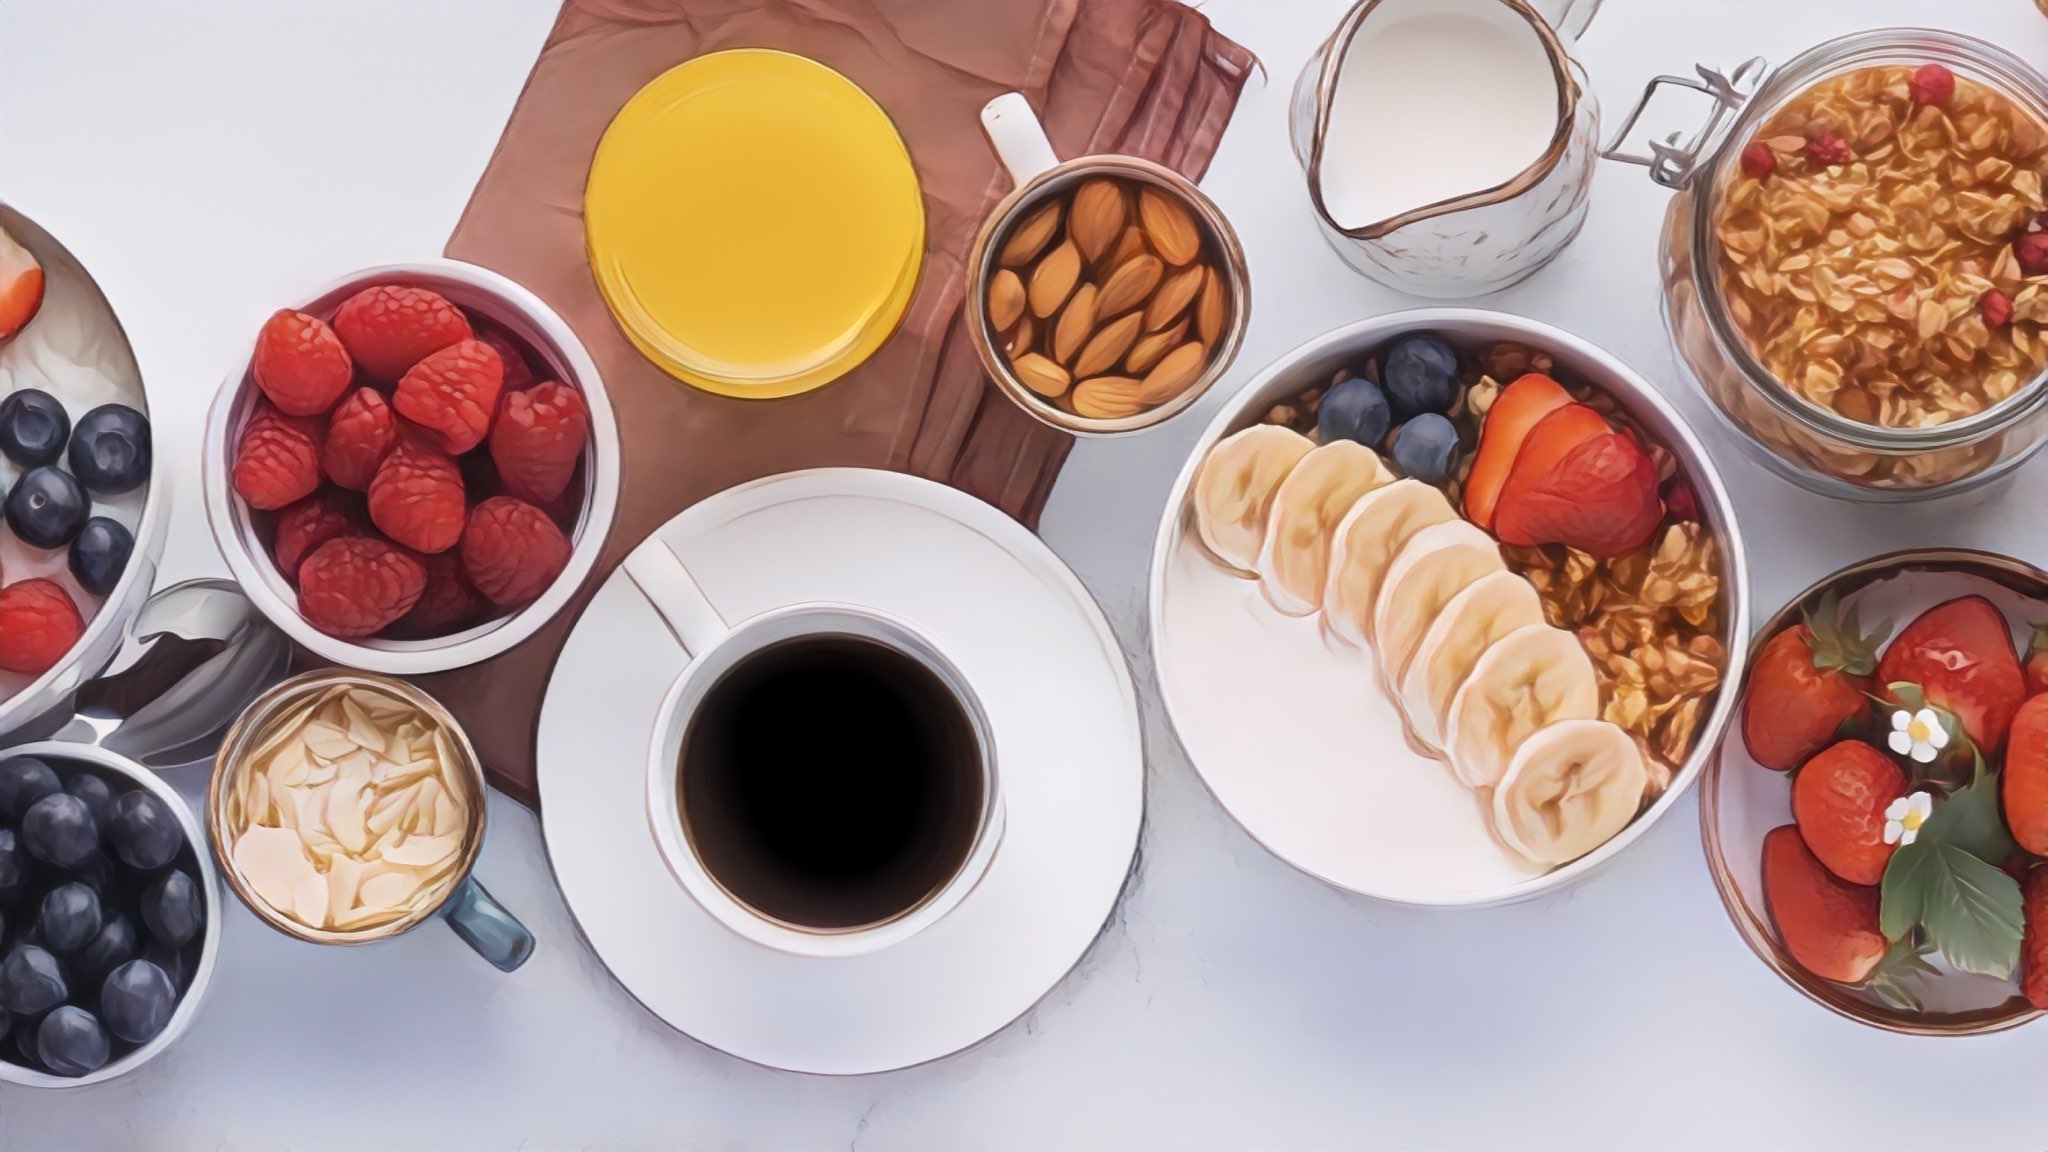 Một bữa sáng đủ chất sẽ giúp ngày dài hoạt động tốt hơn